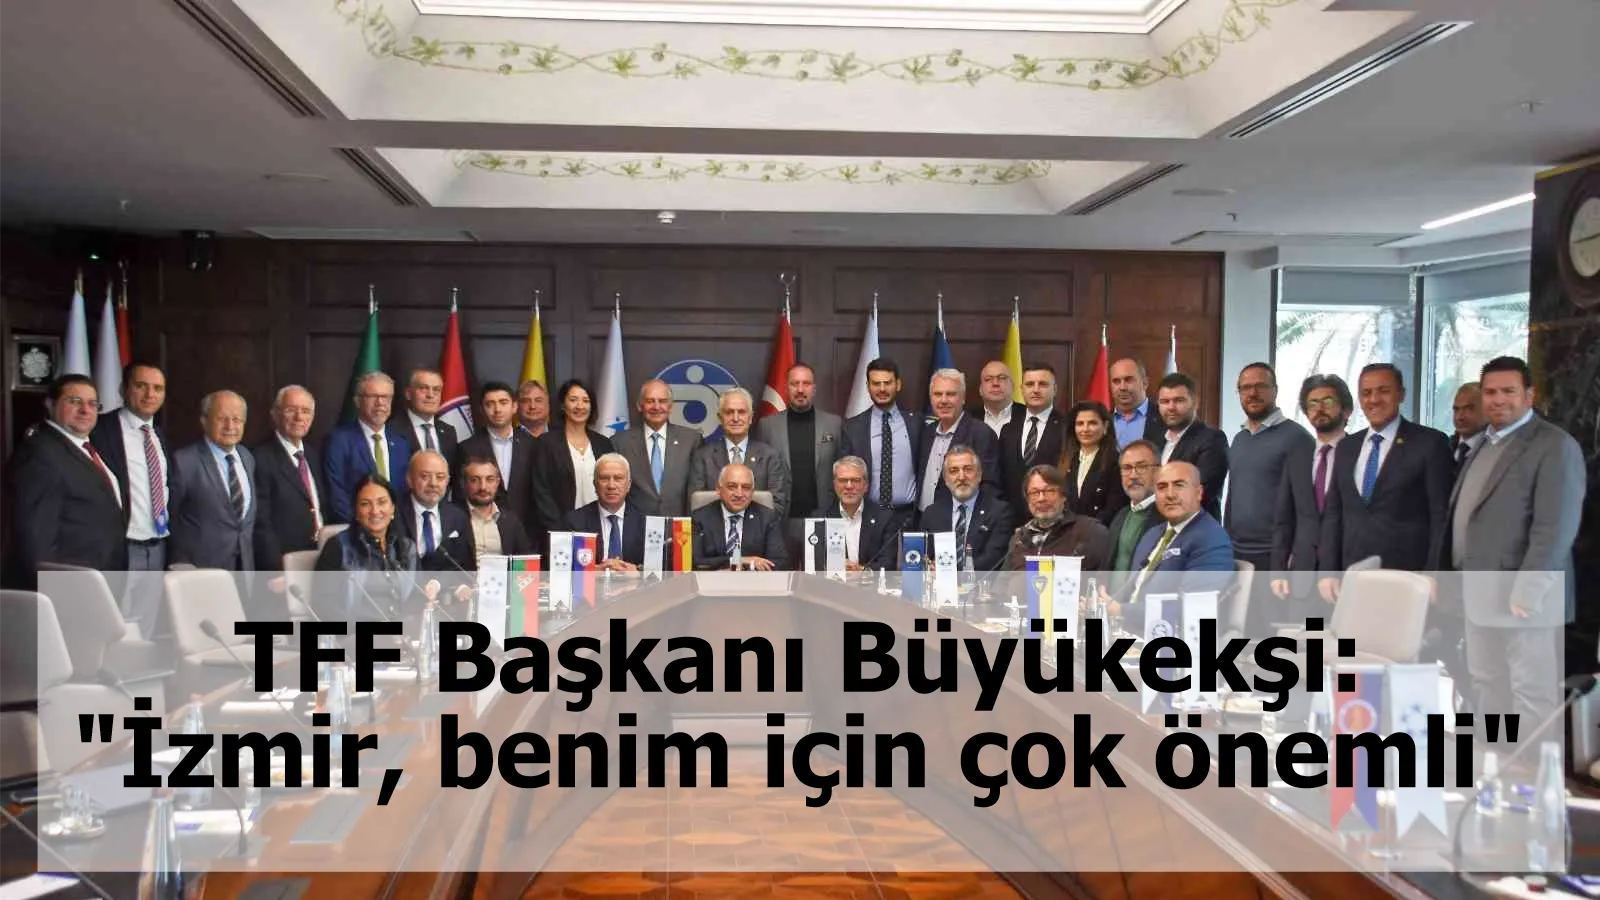 TFF Başkanı Büyükekşi: "İzmir, benim için çok önemli"